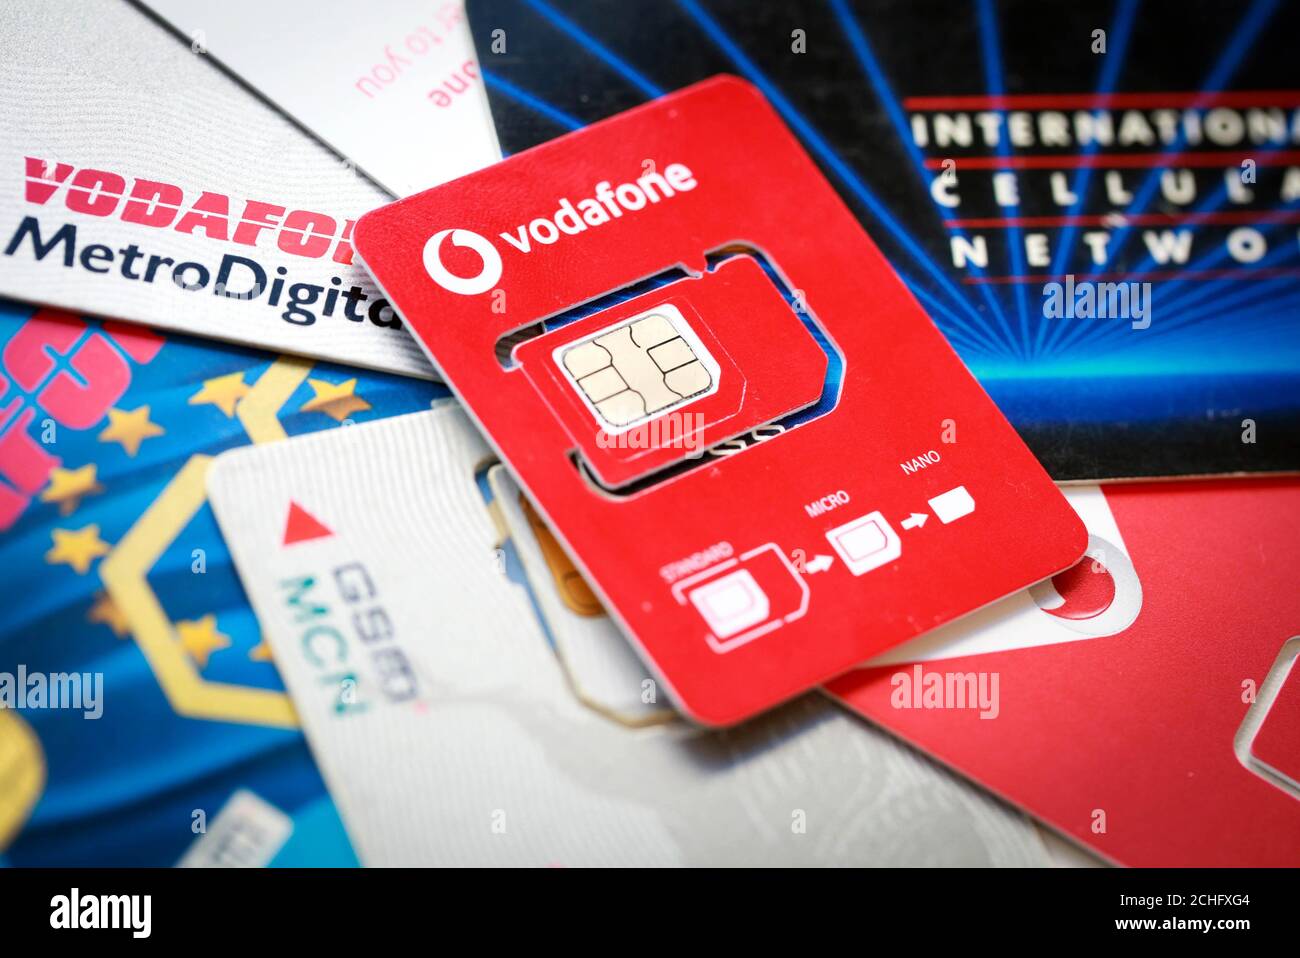 EDITORIAL UTILISEZ UNIQUEMENT le nouveau support de carte SIM demi-taille  de Vodafone qui est lancé à partir de Noël 2019, réduisant la quantité de  plastique nécessaire pour produire leurs cartes SIM. Photo